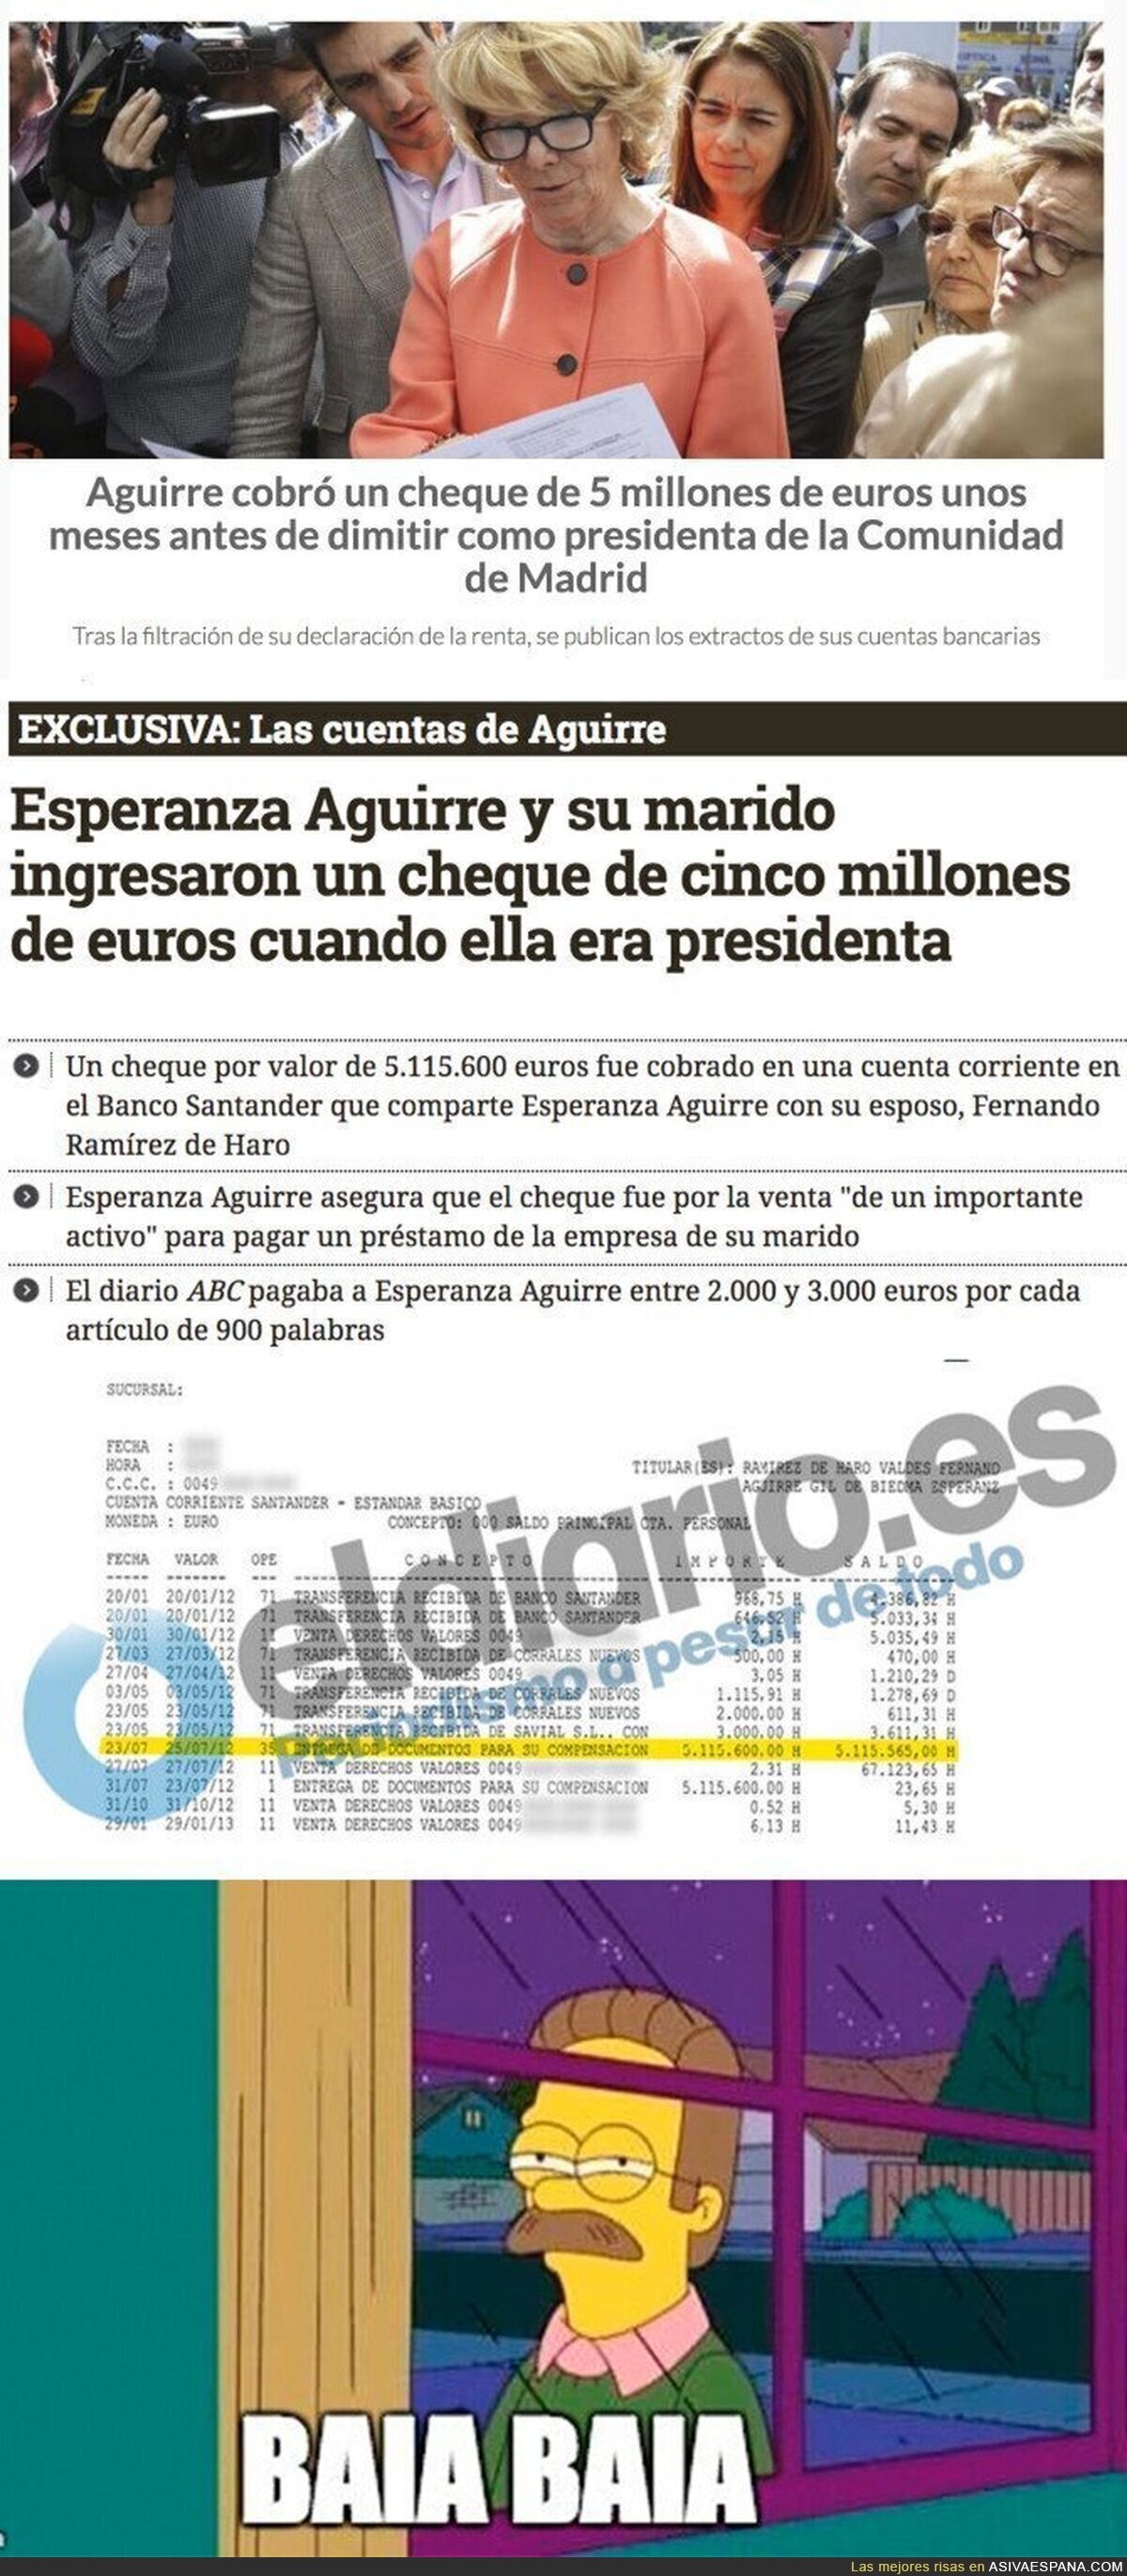 La gran cantidad de dinero que ingresó Esperanza Aguirre antes de dimitir de la Comunidad de Madrid